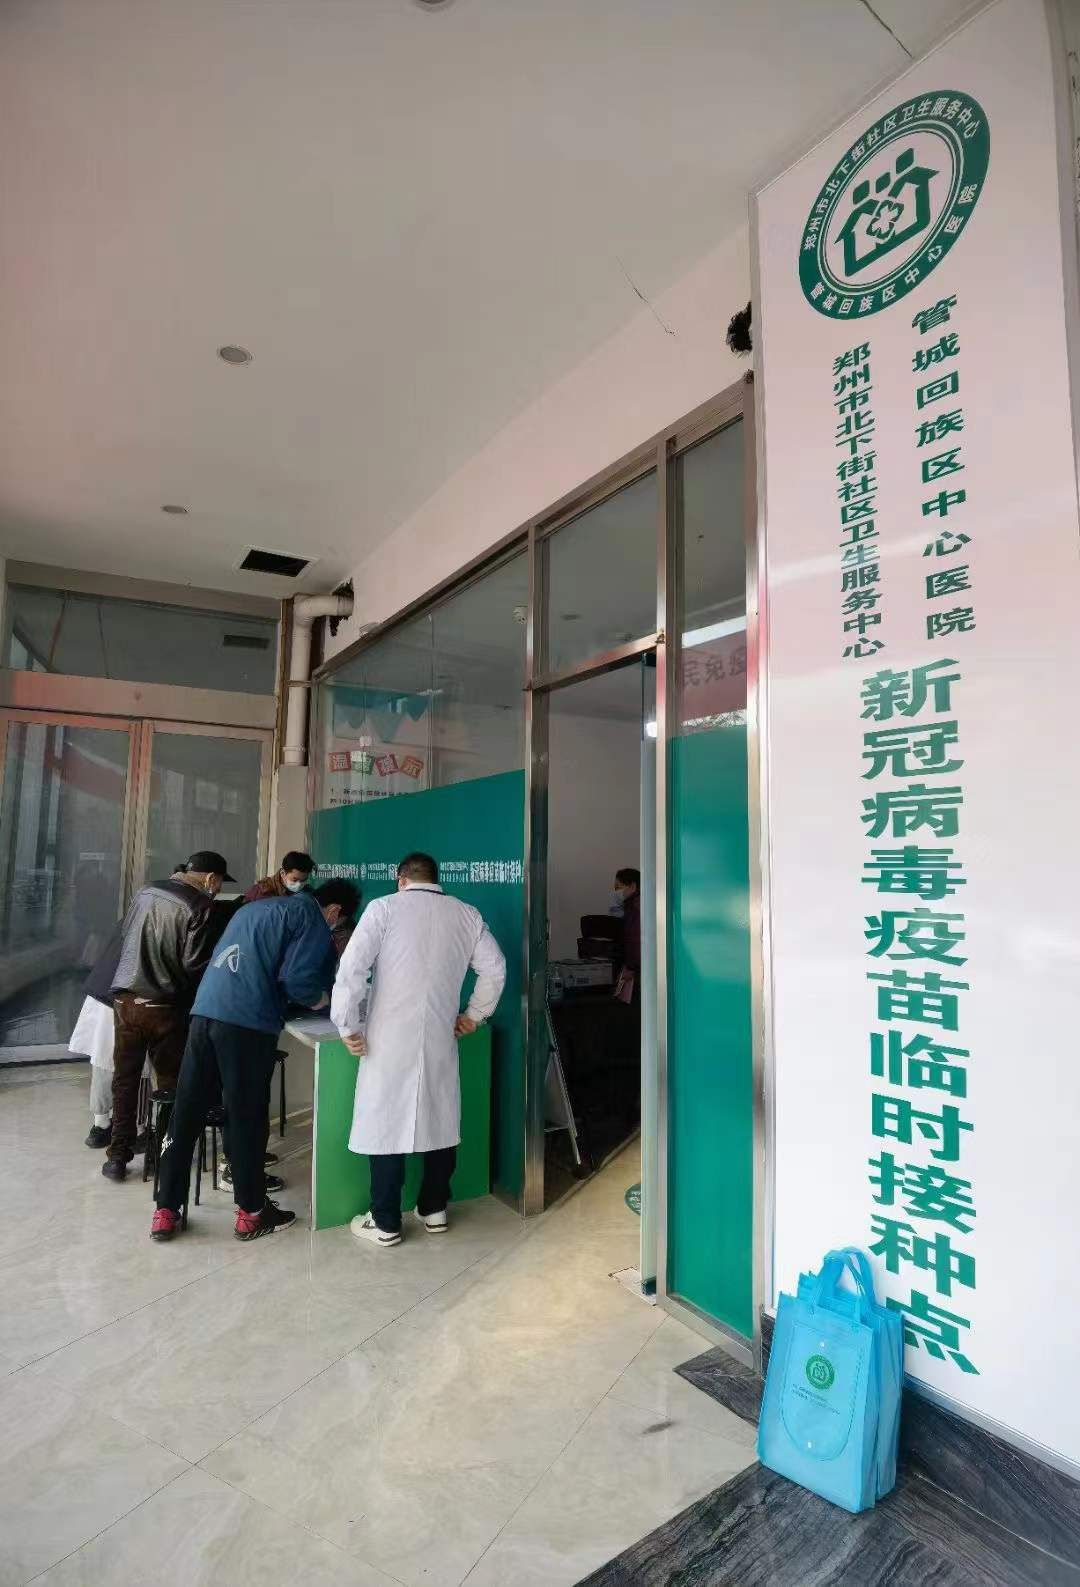 门诊|郑州新冠疫苗接种门诊陆续恢复“大白”无缝衔接投入到疫苗接种工作